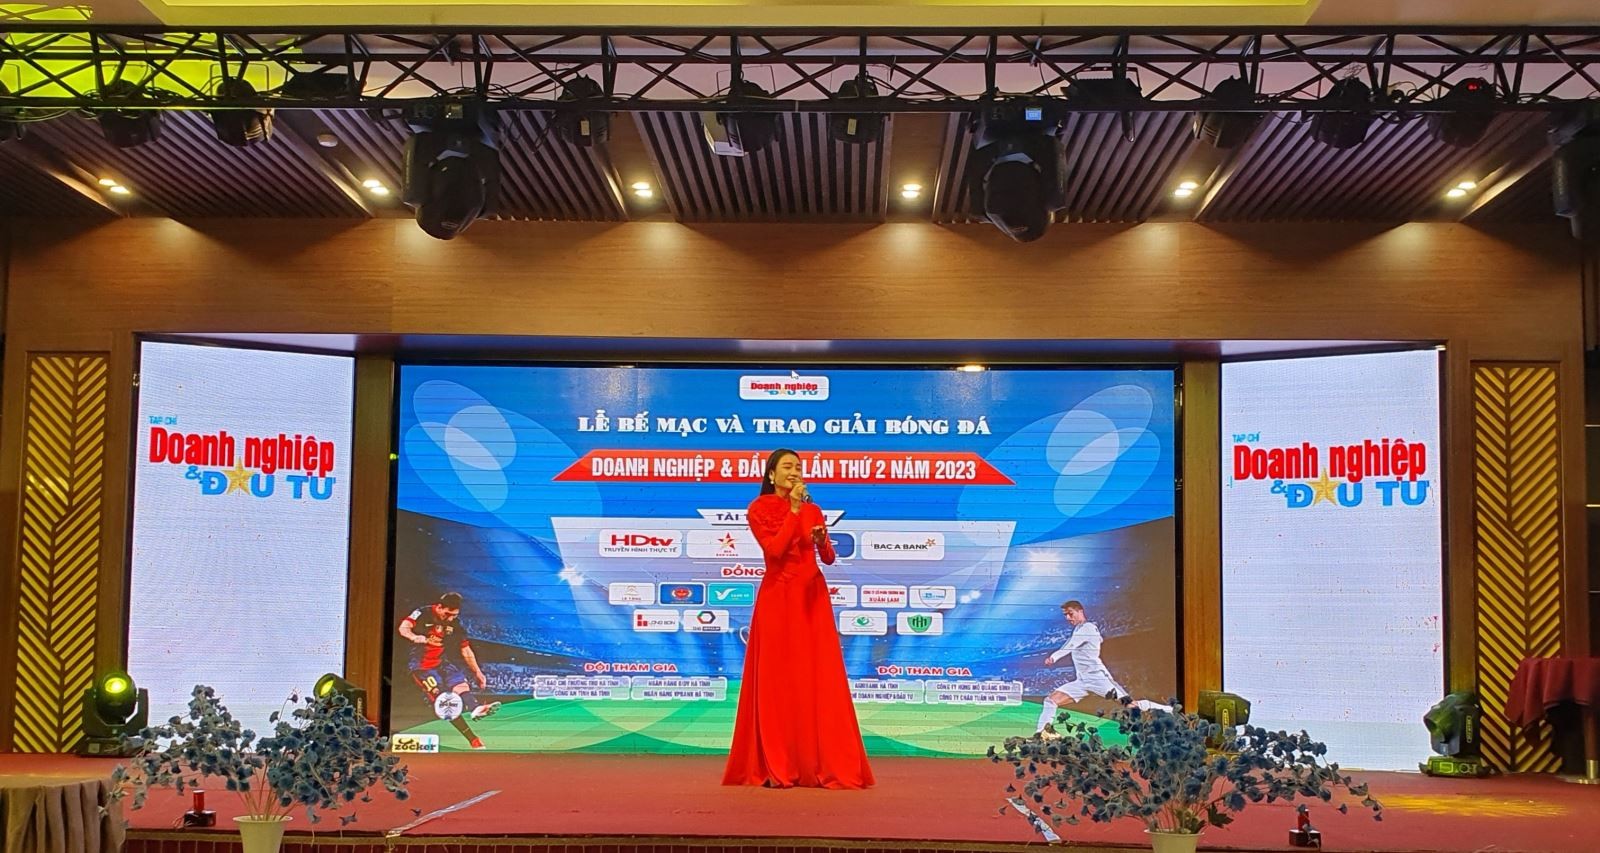 Hà Tĩnh: Bế mạc và trao giải bóng đá Doanh nghiệp và Đầu tư lần thứ 2